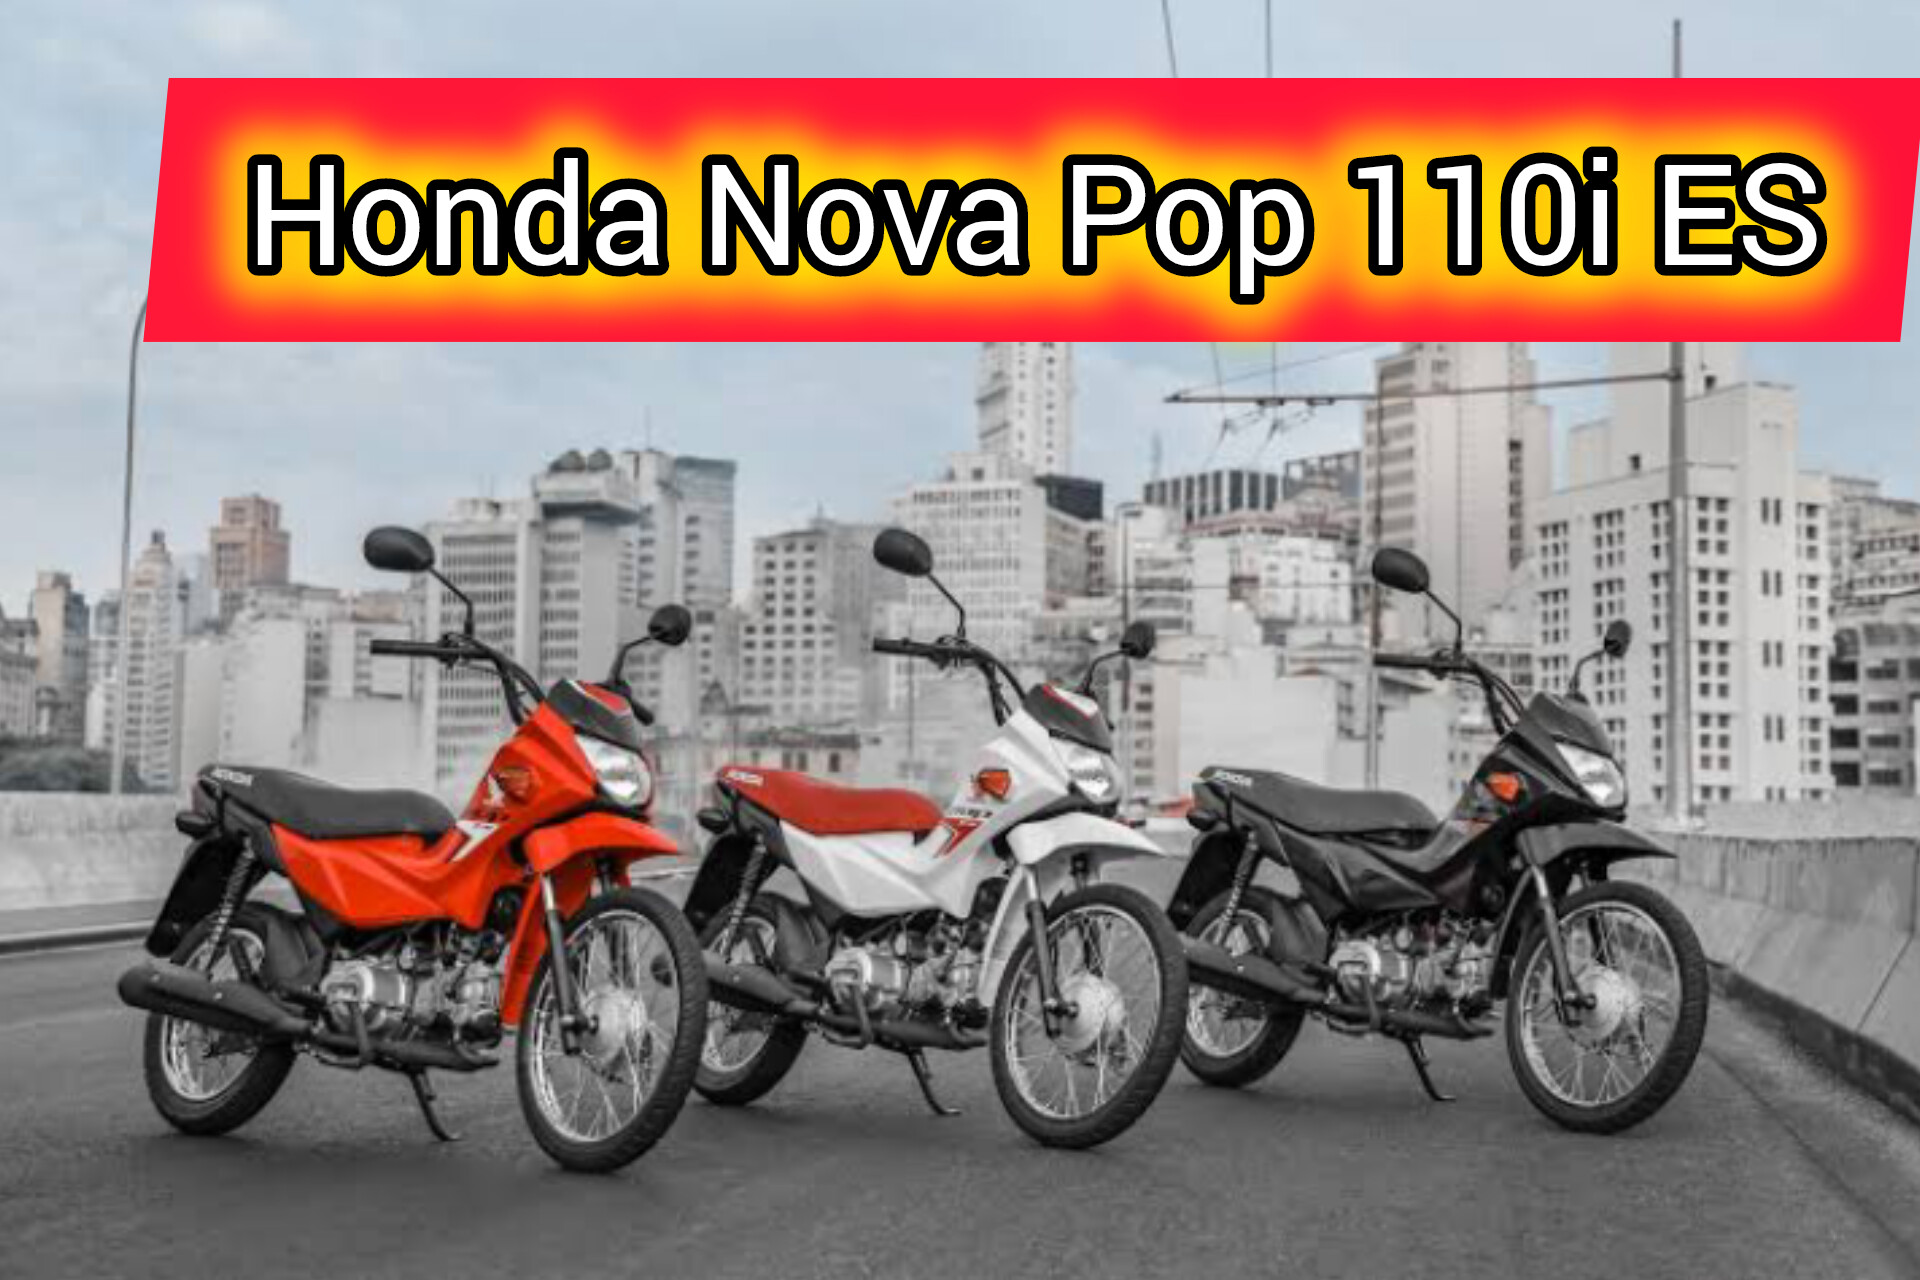 Motor Baru Honda Nova Pop 110i ES, Motor Bebek dengan Tampilan Unik